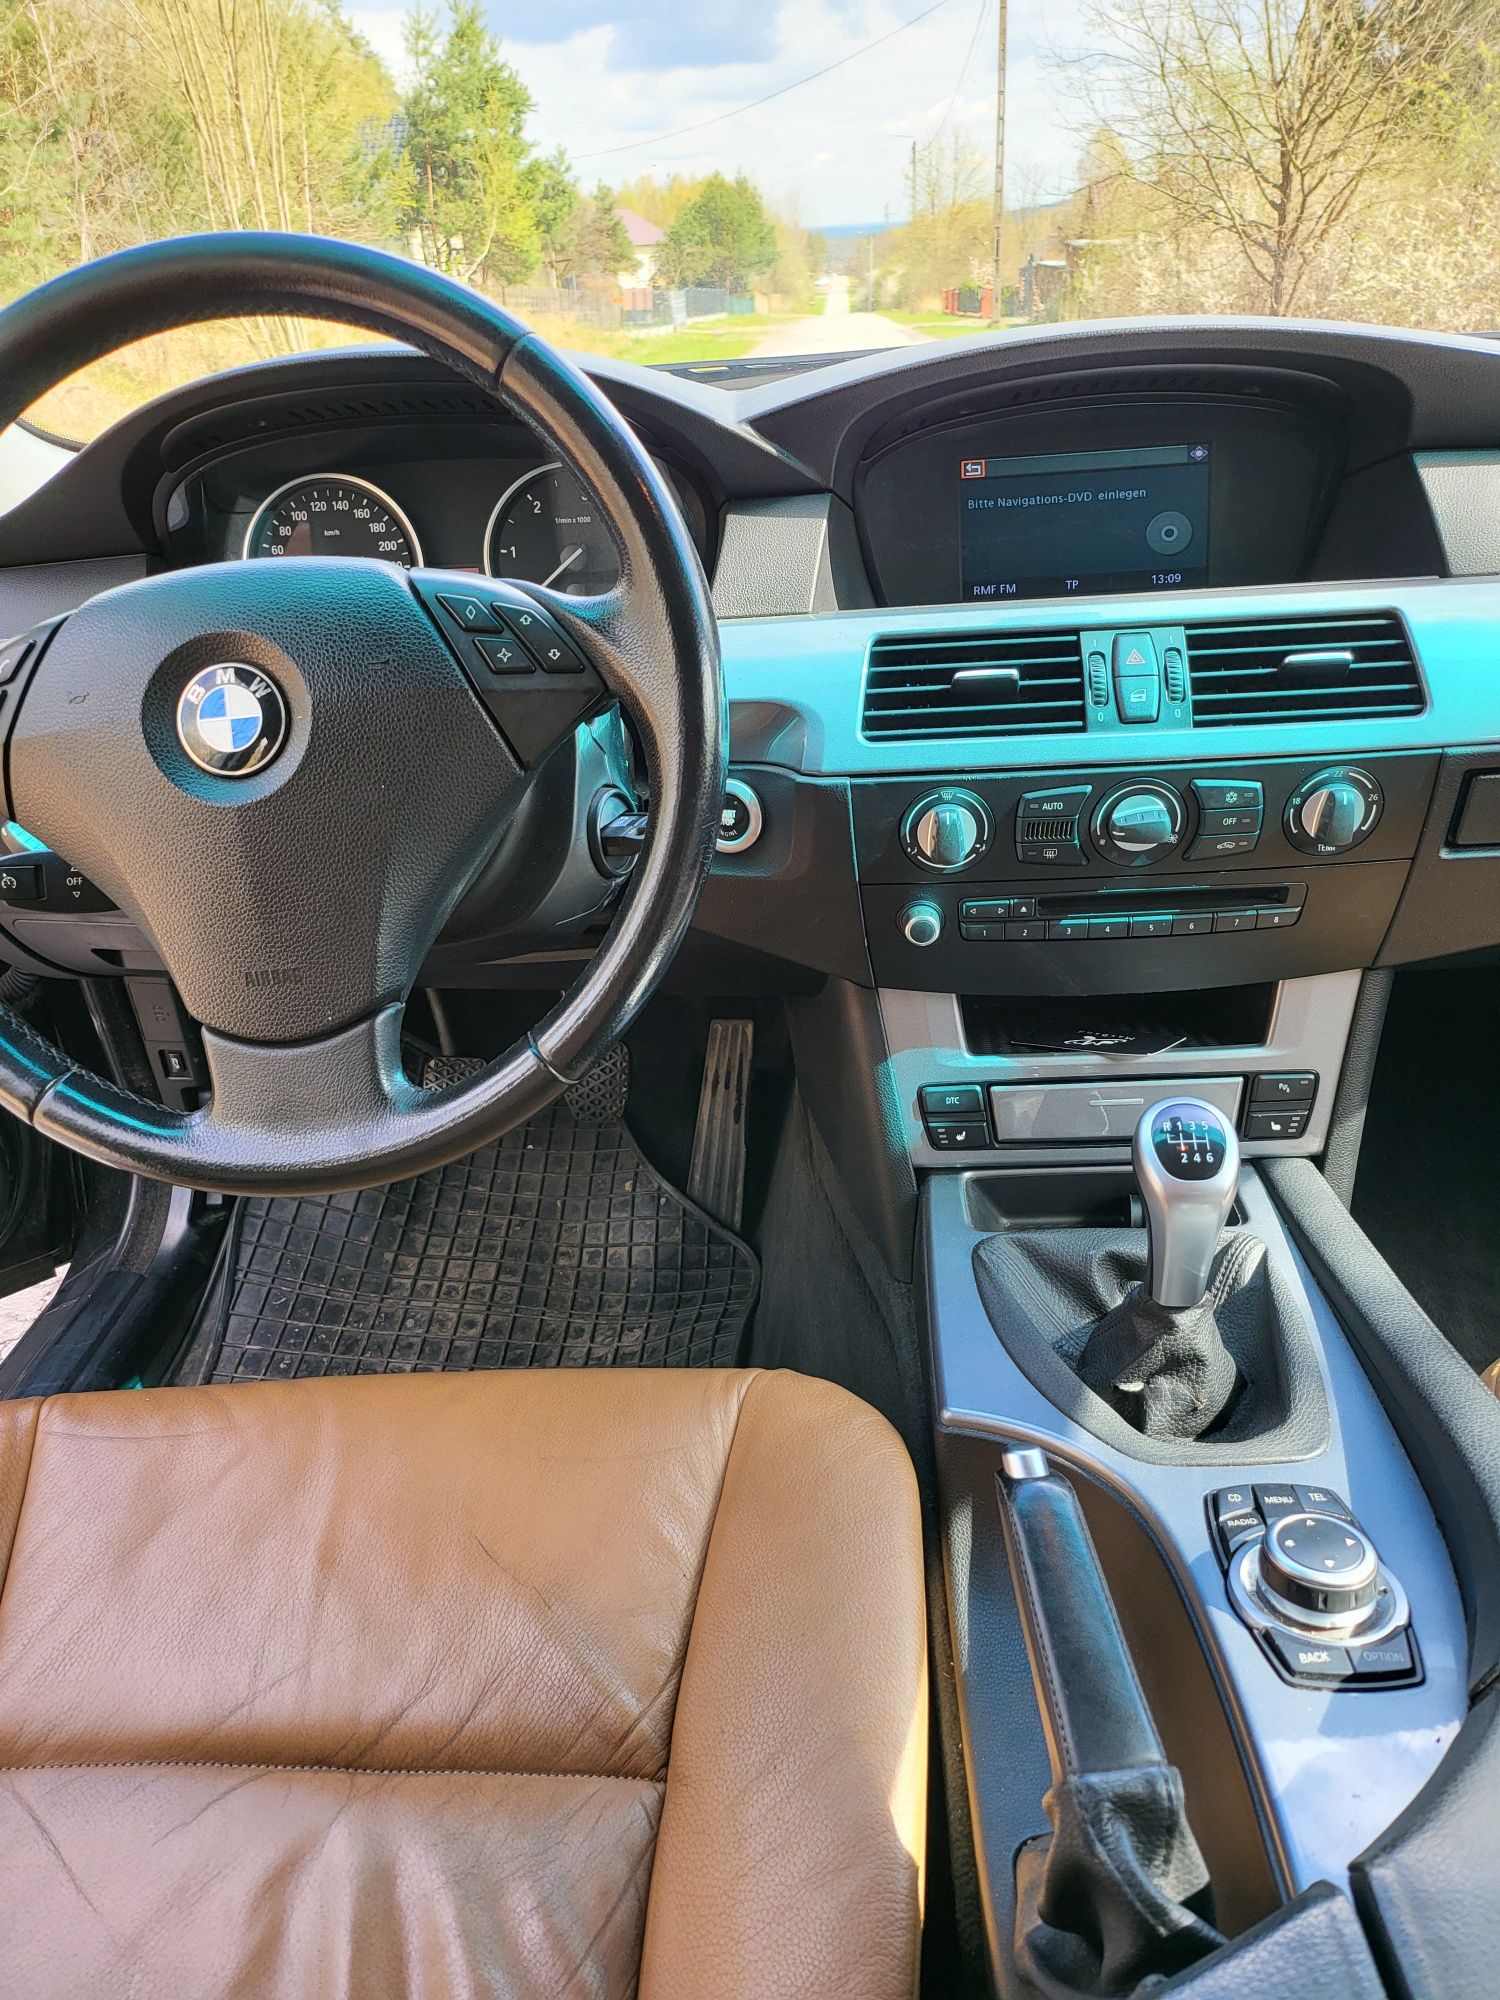 BMW 530 DIESEL 197 PS X Drive Manual Lift